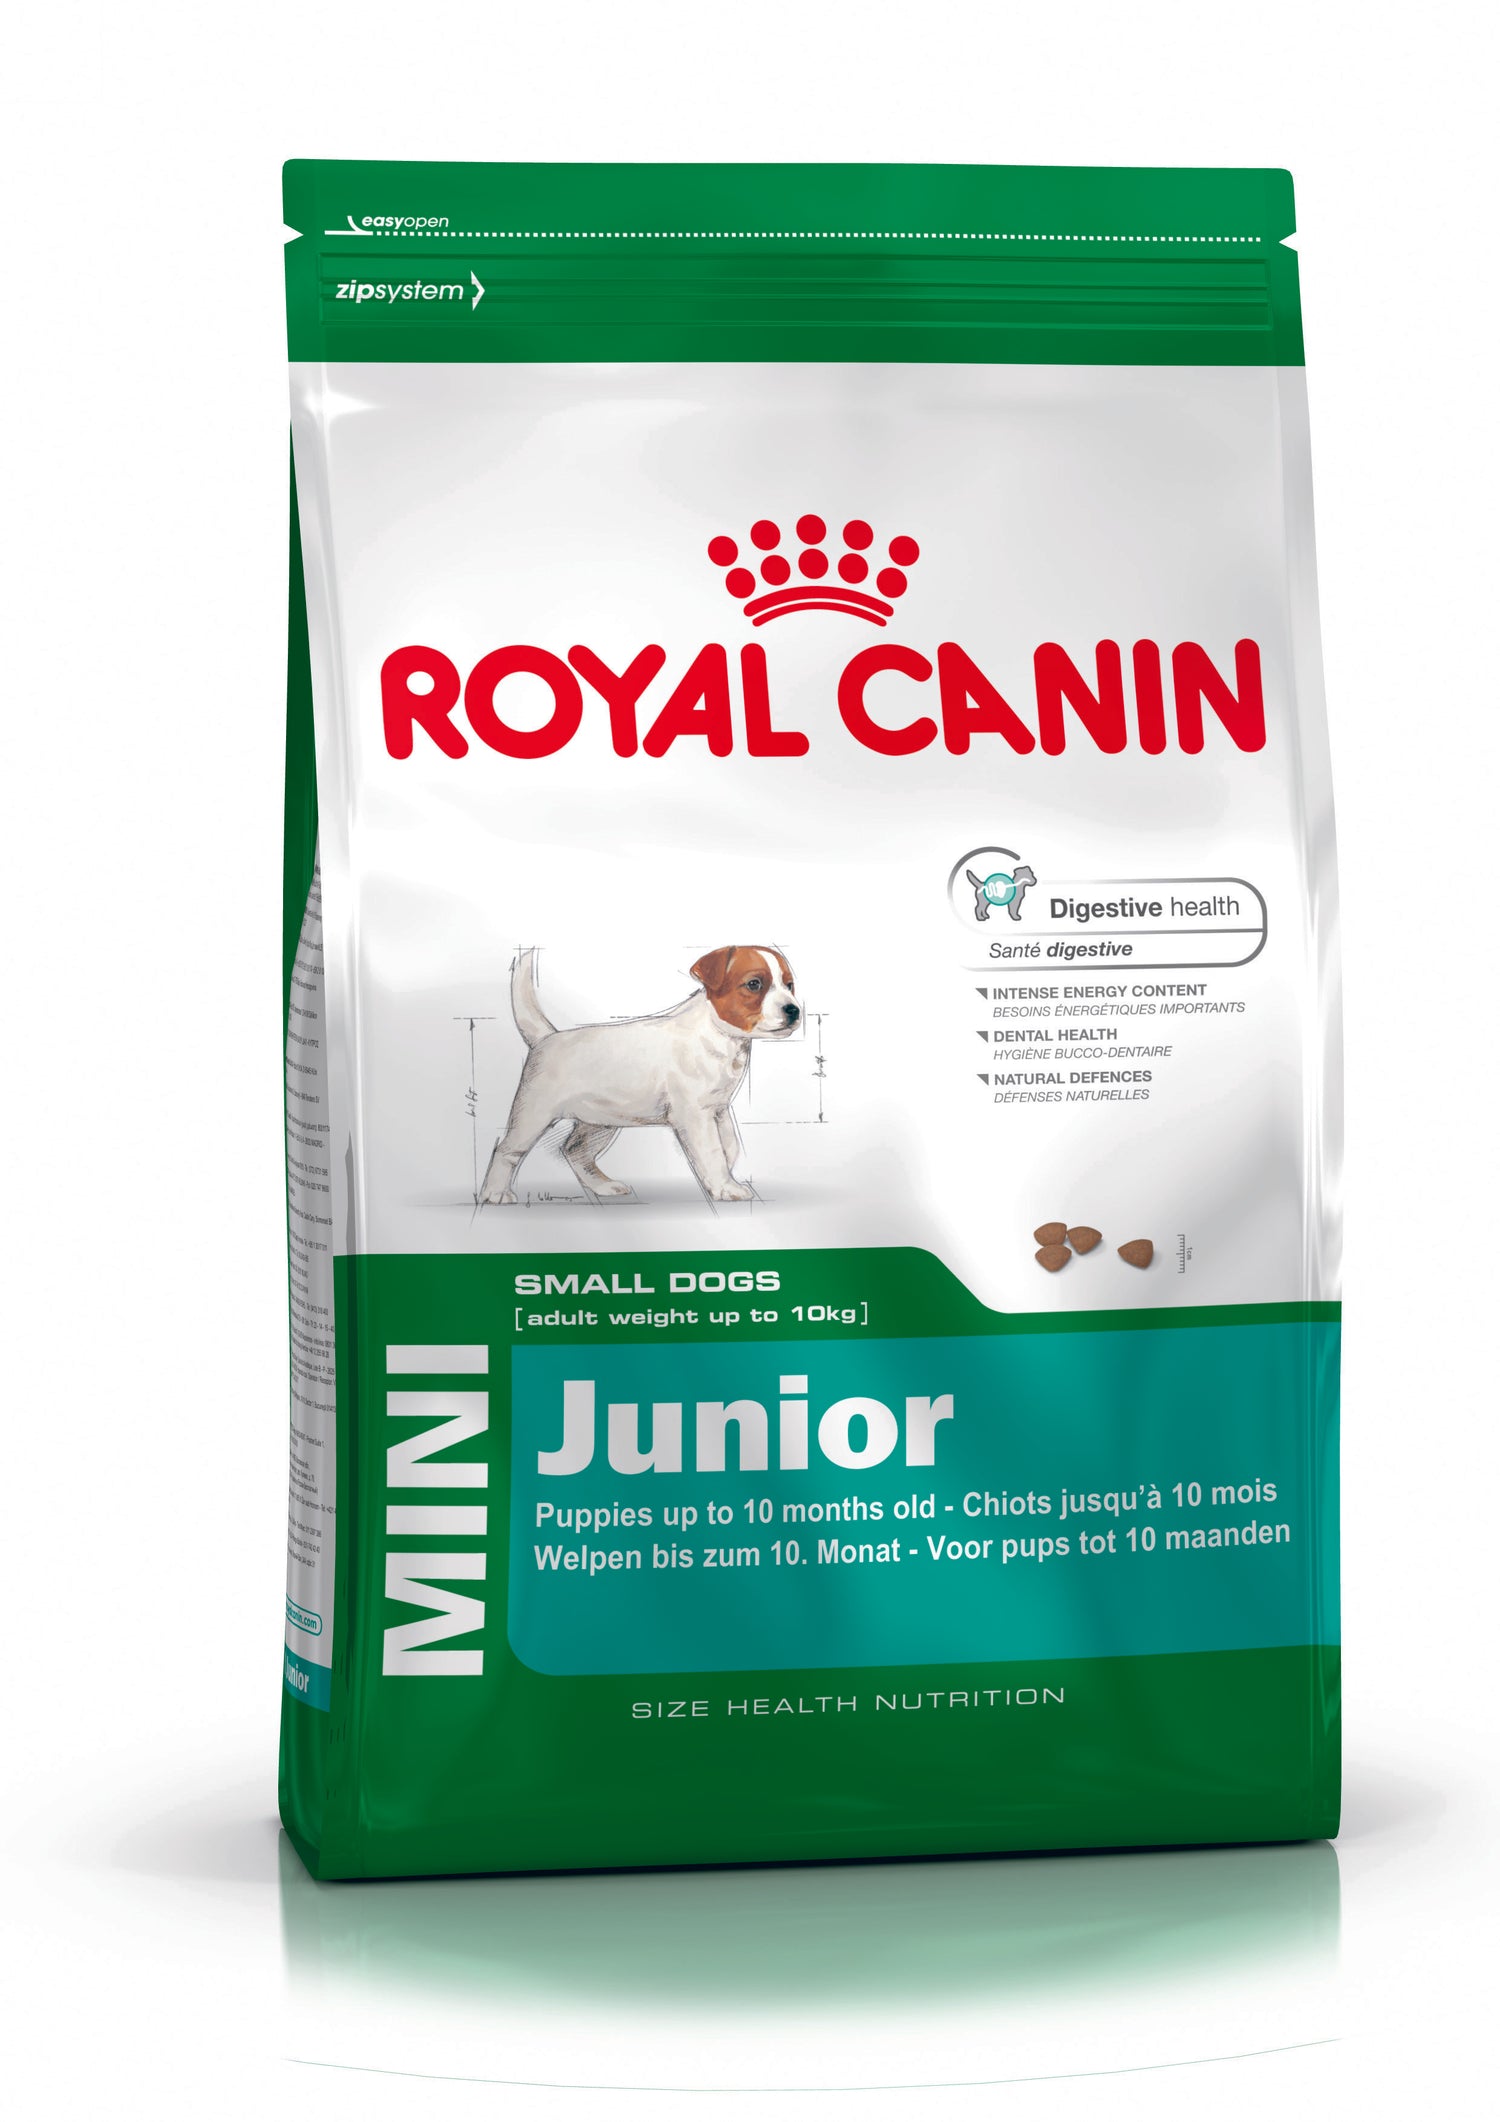 Royal Canin-Mini Puppy Dog Food 2Kg